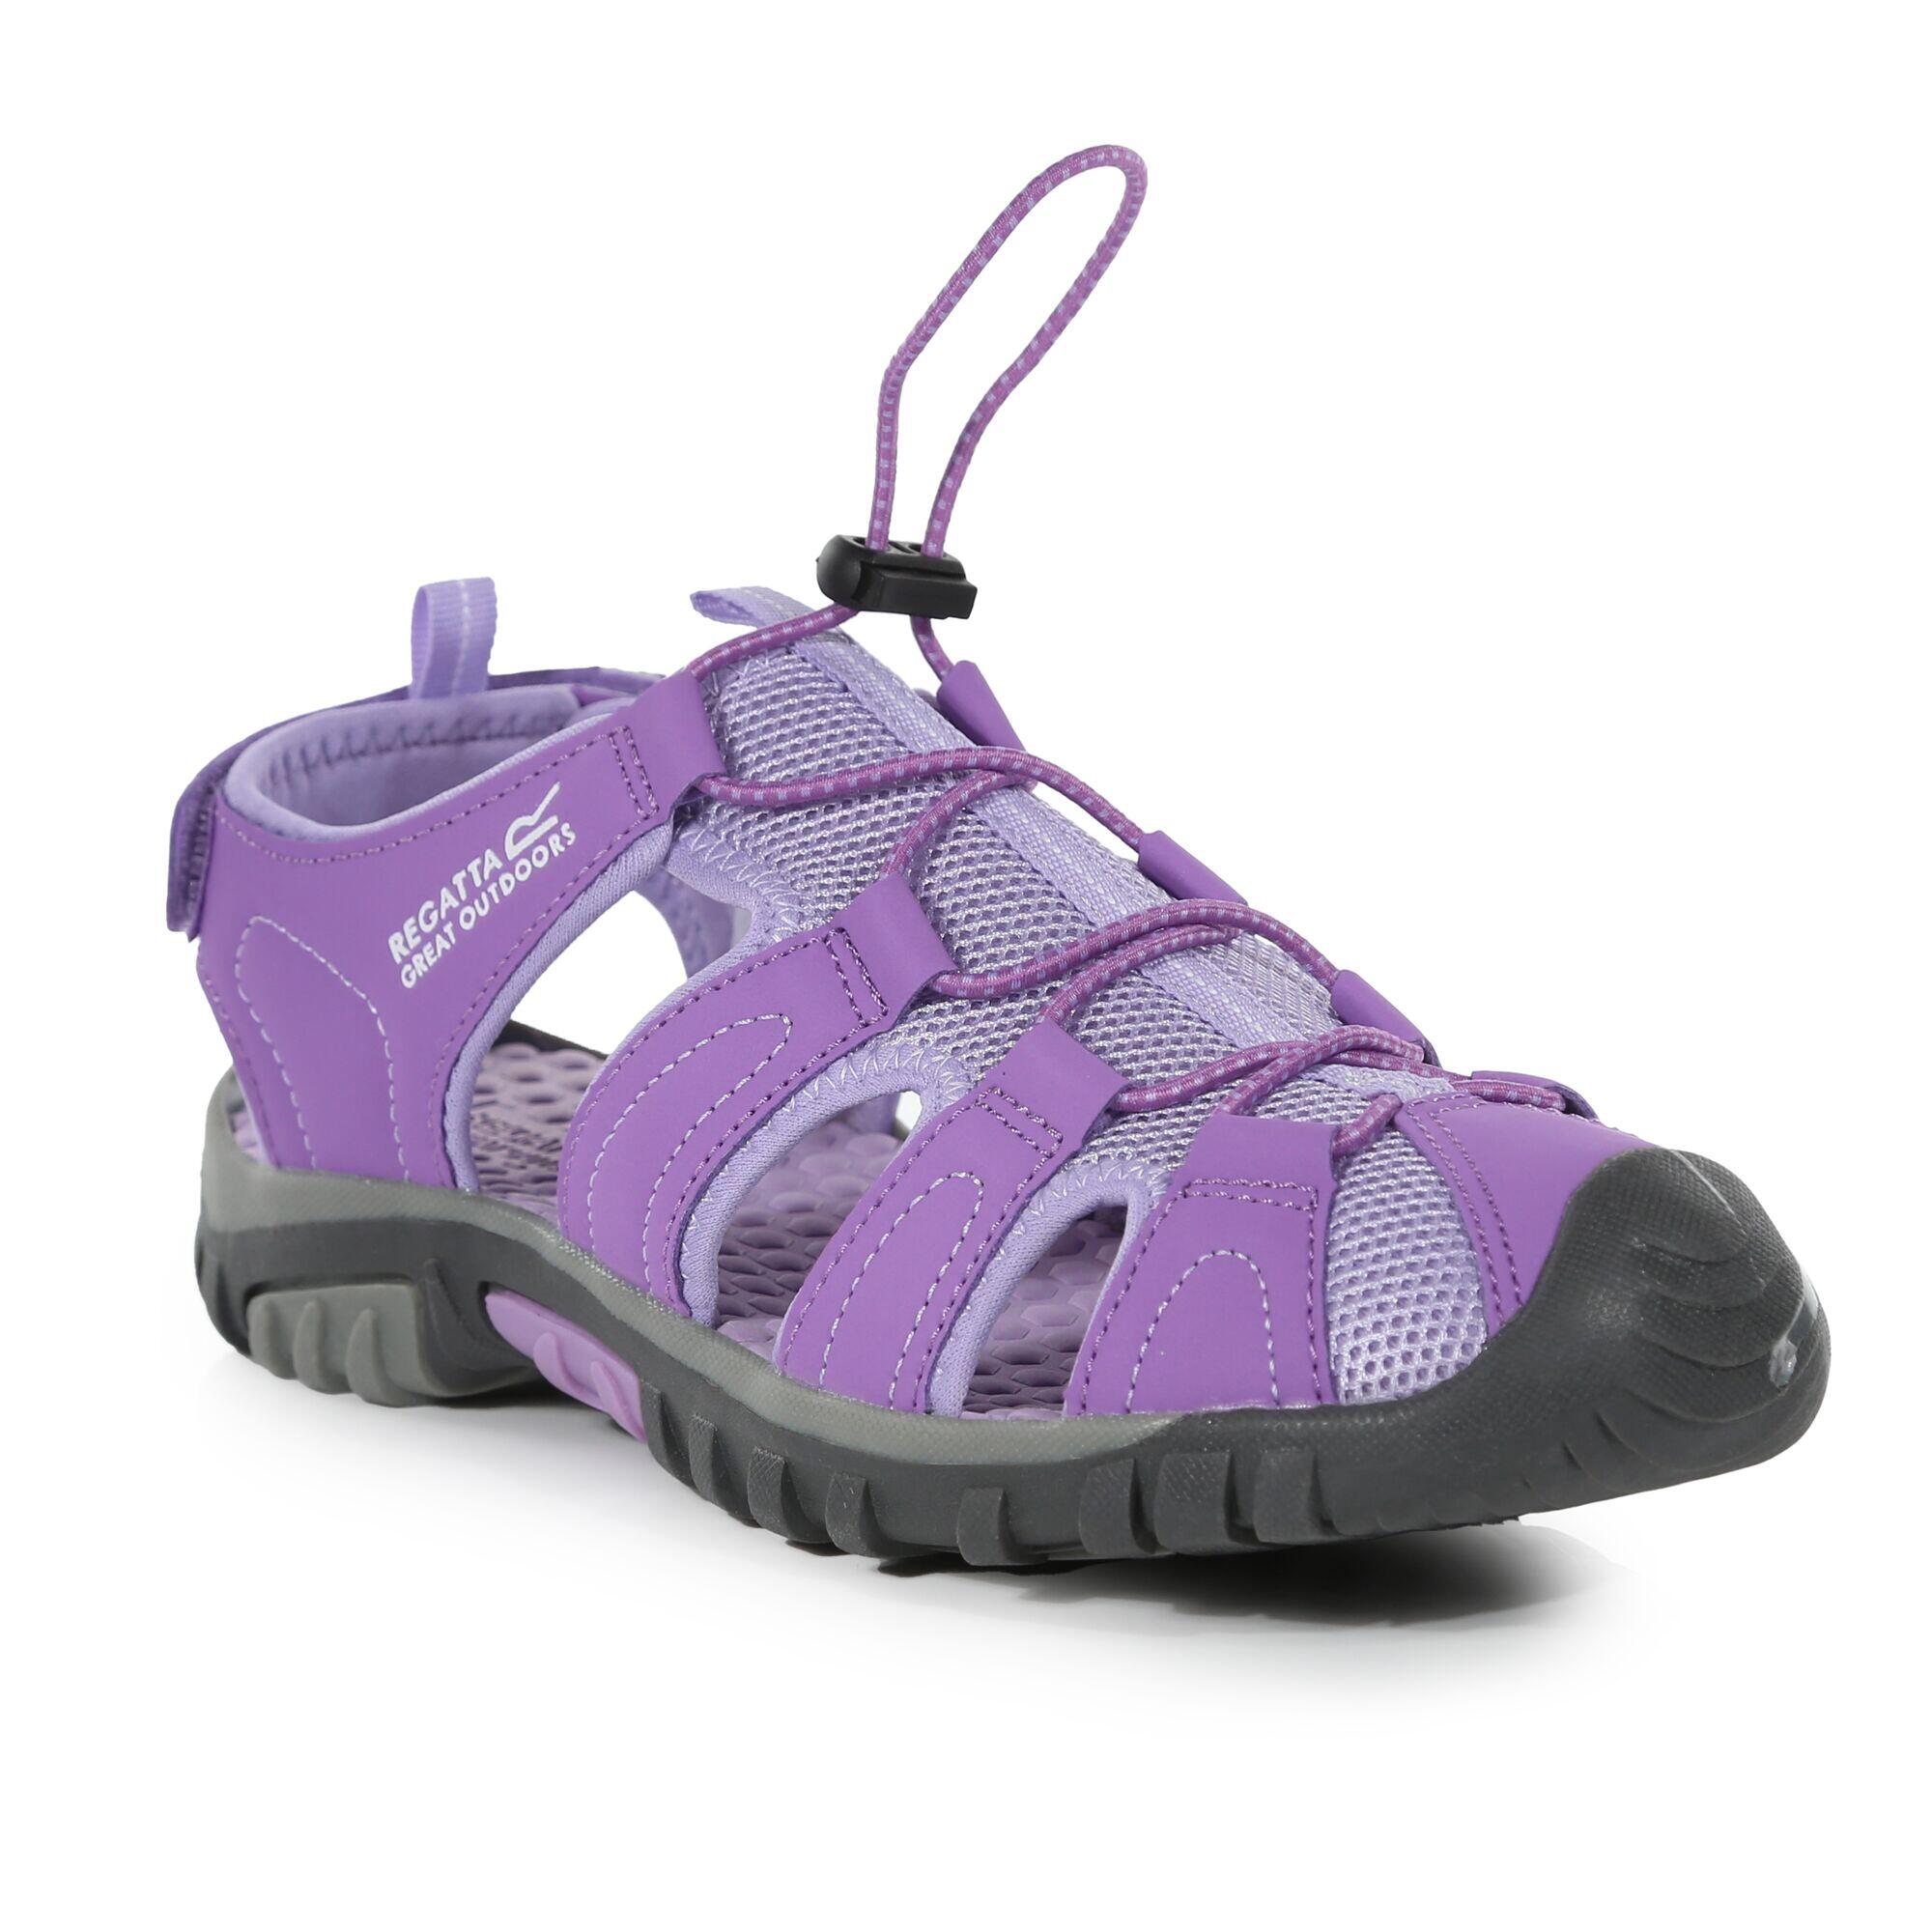 Westshore Junior Kids Walking Sandals - Purple Amethyst 2/5